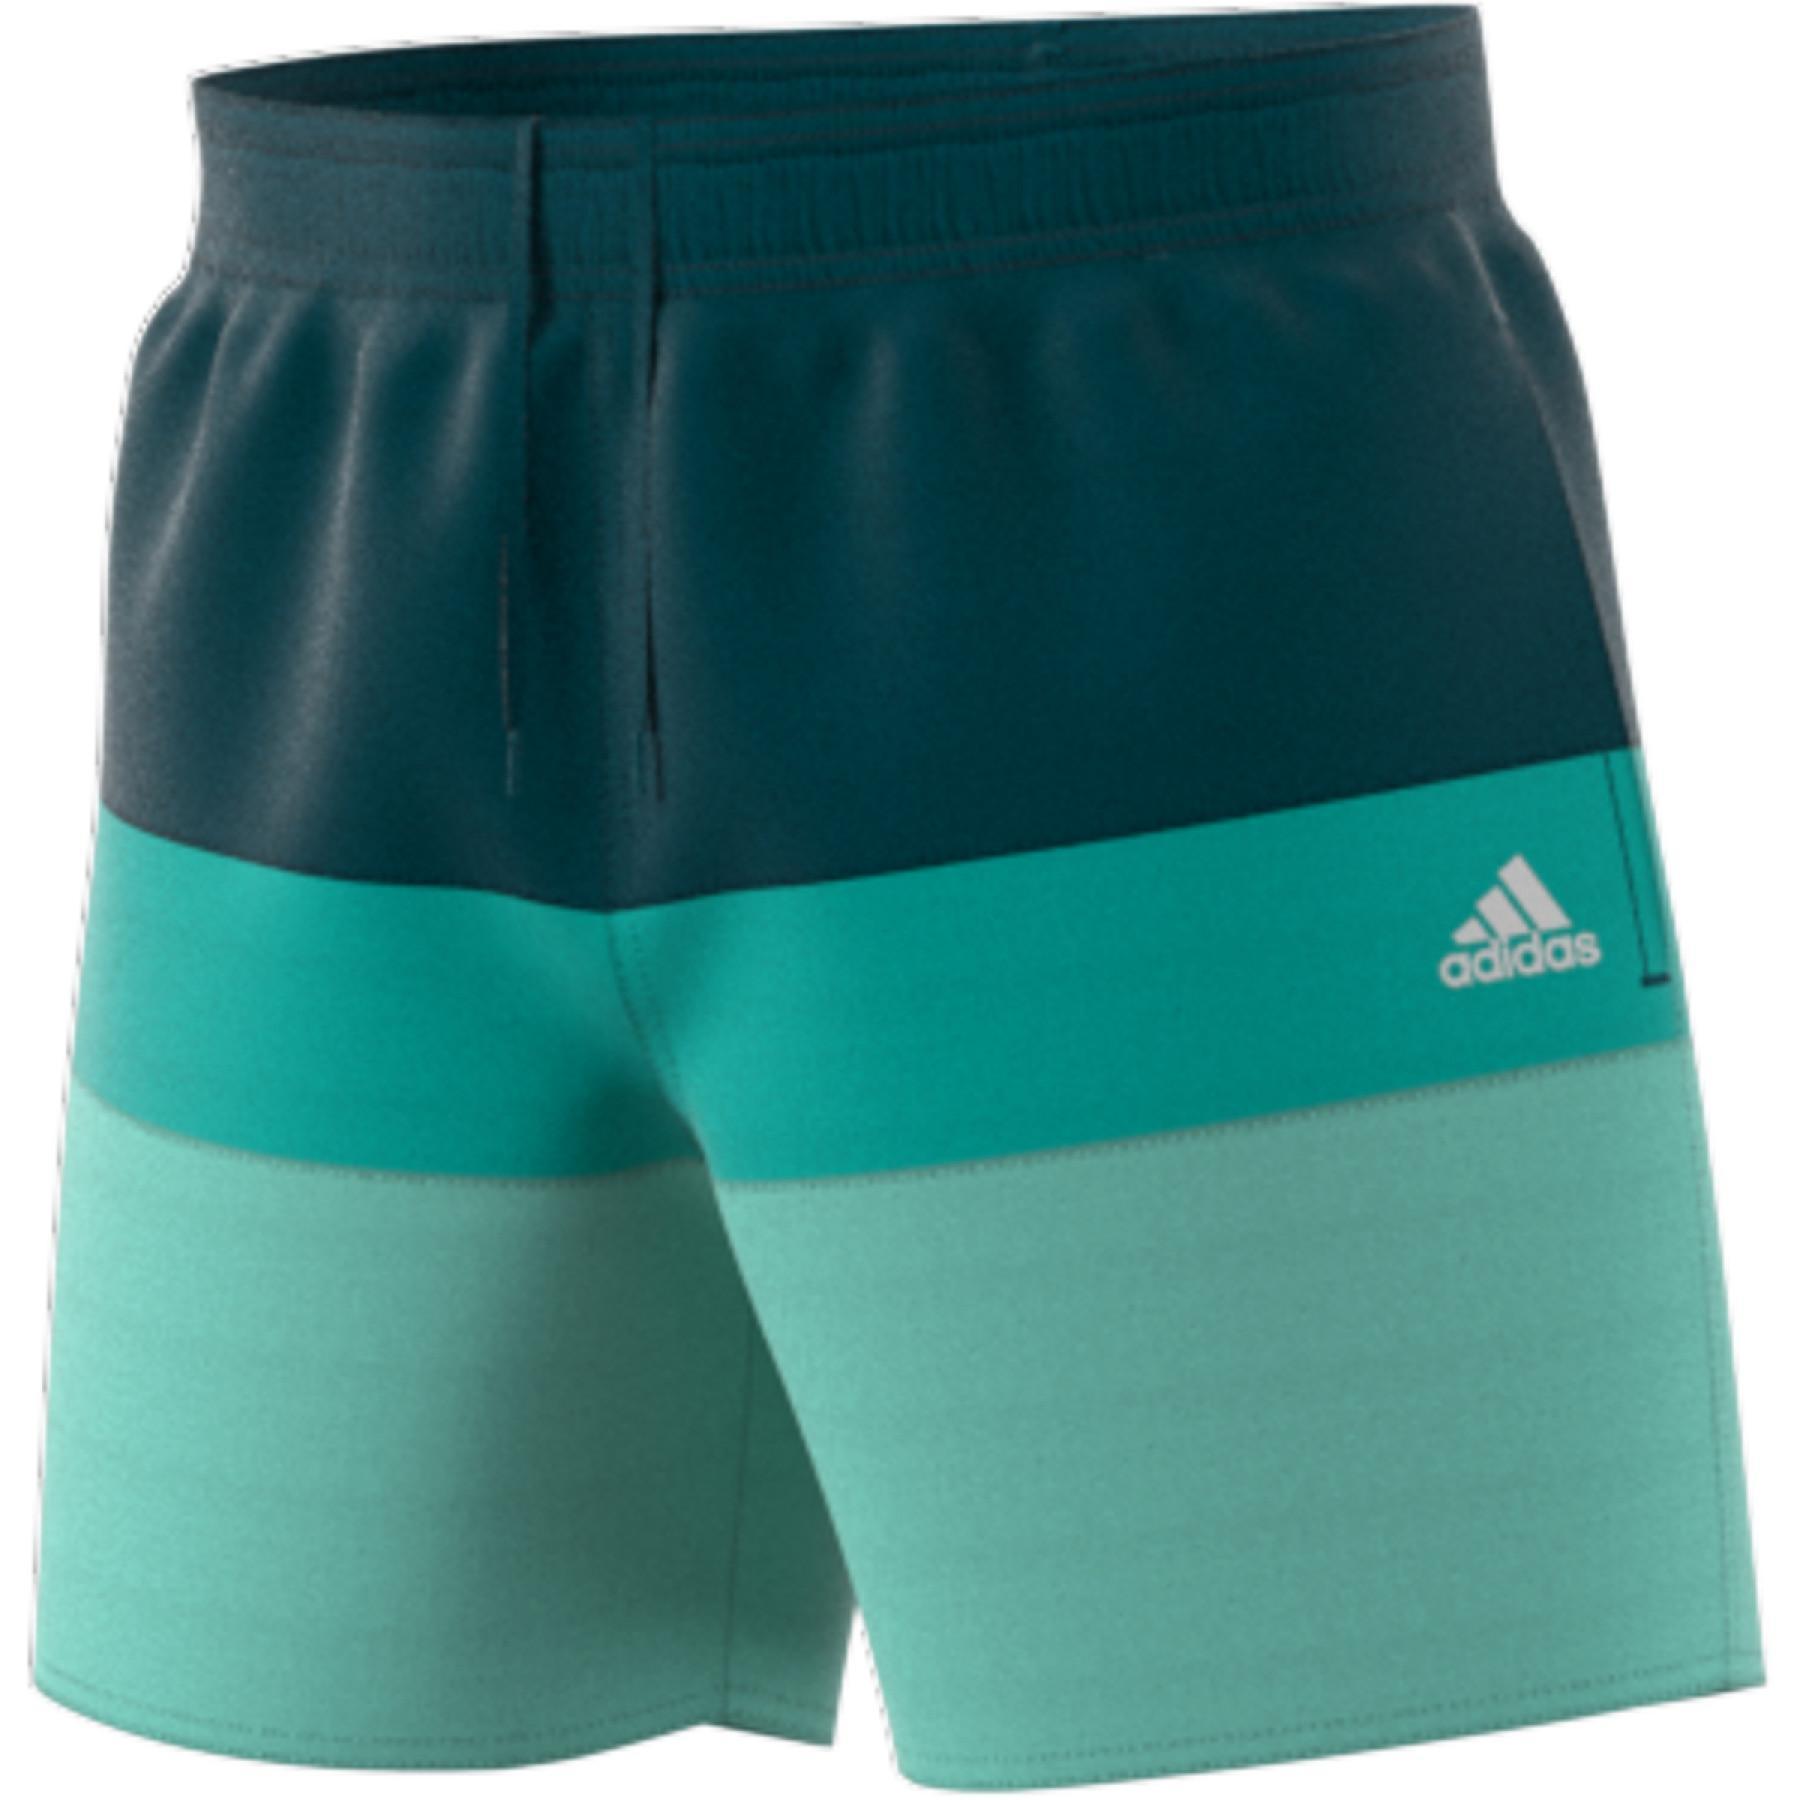 Swimming shorts adidas Length Colorblock